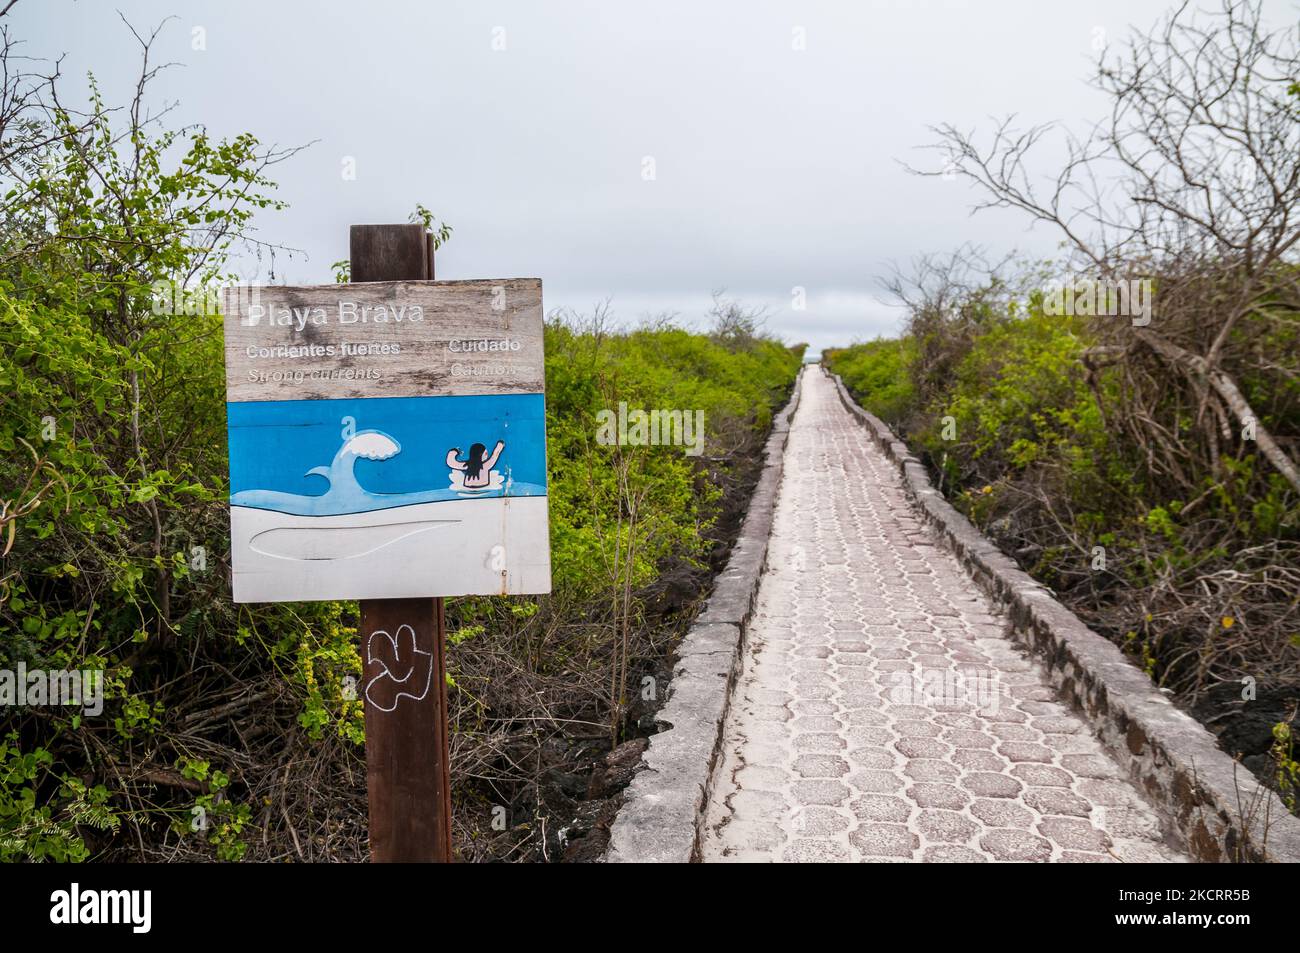 Playa Brava caution sign, Tortuga Bay, October, Santa Cruz, Galapagos Islands Stock Photo